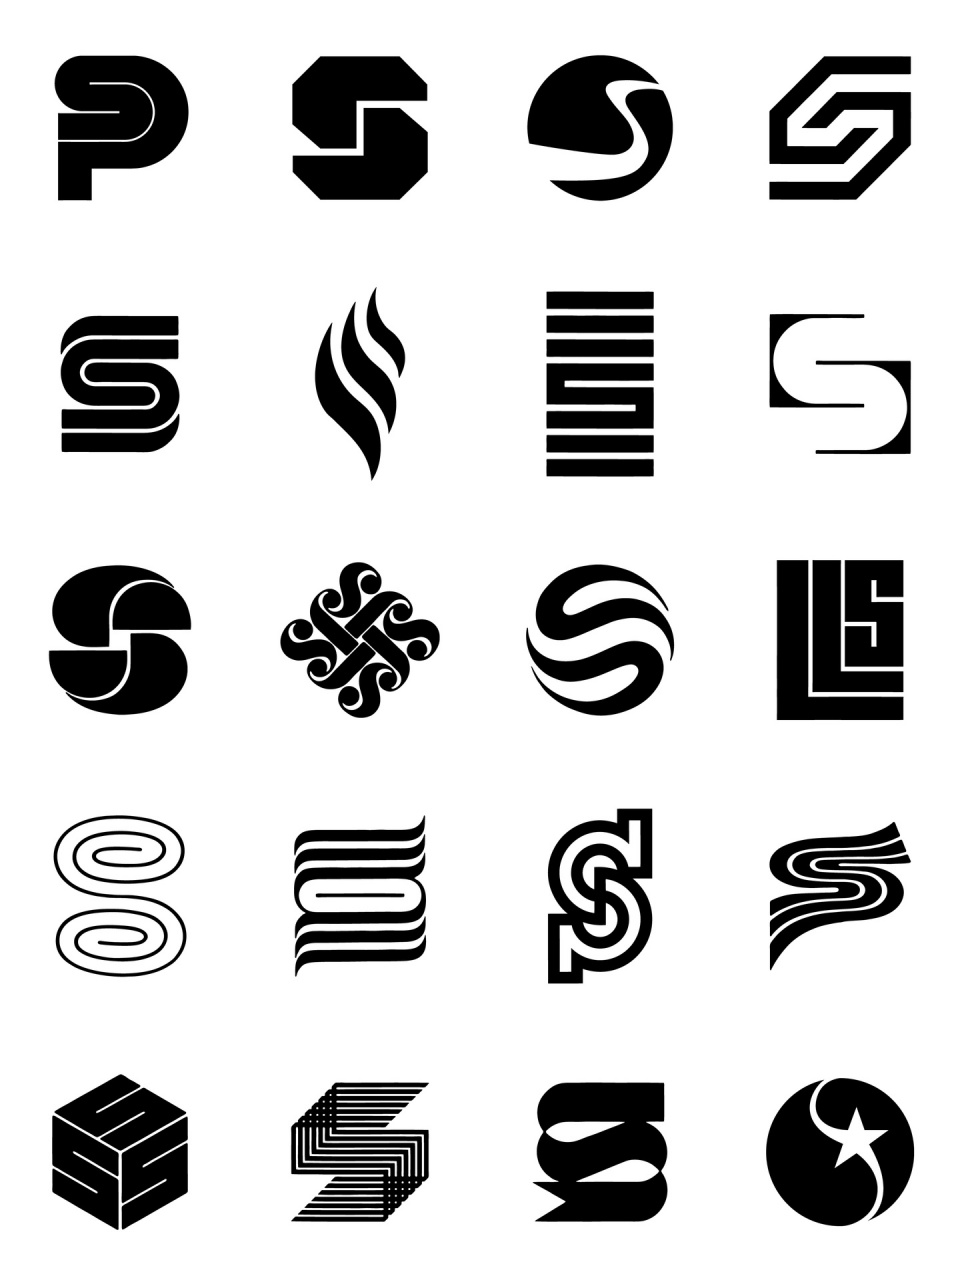 s的logo设计身材图片